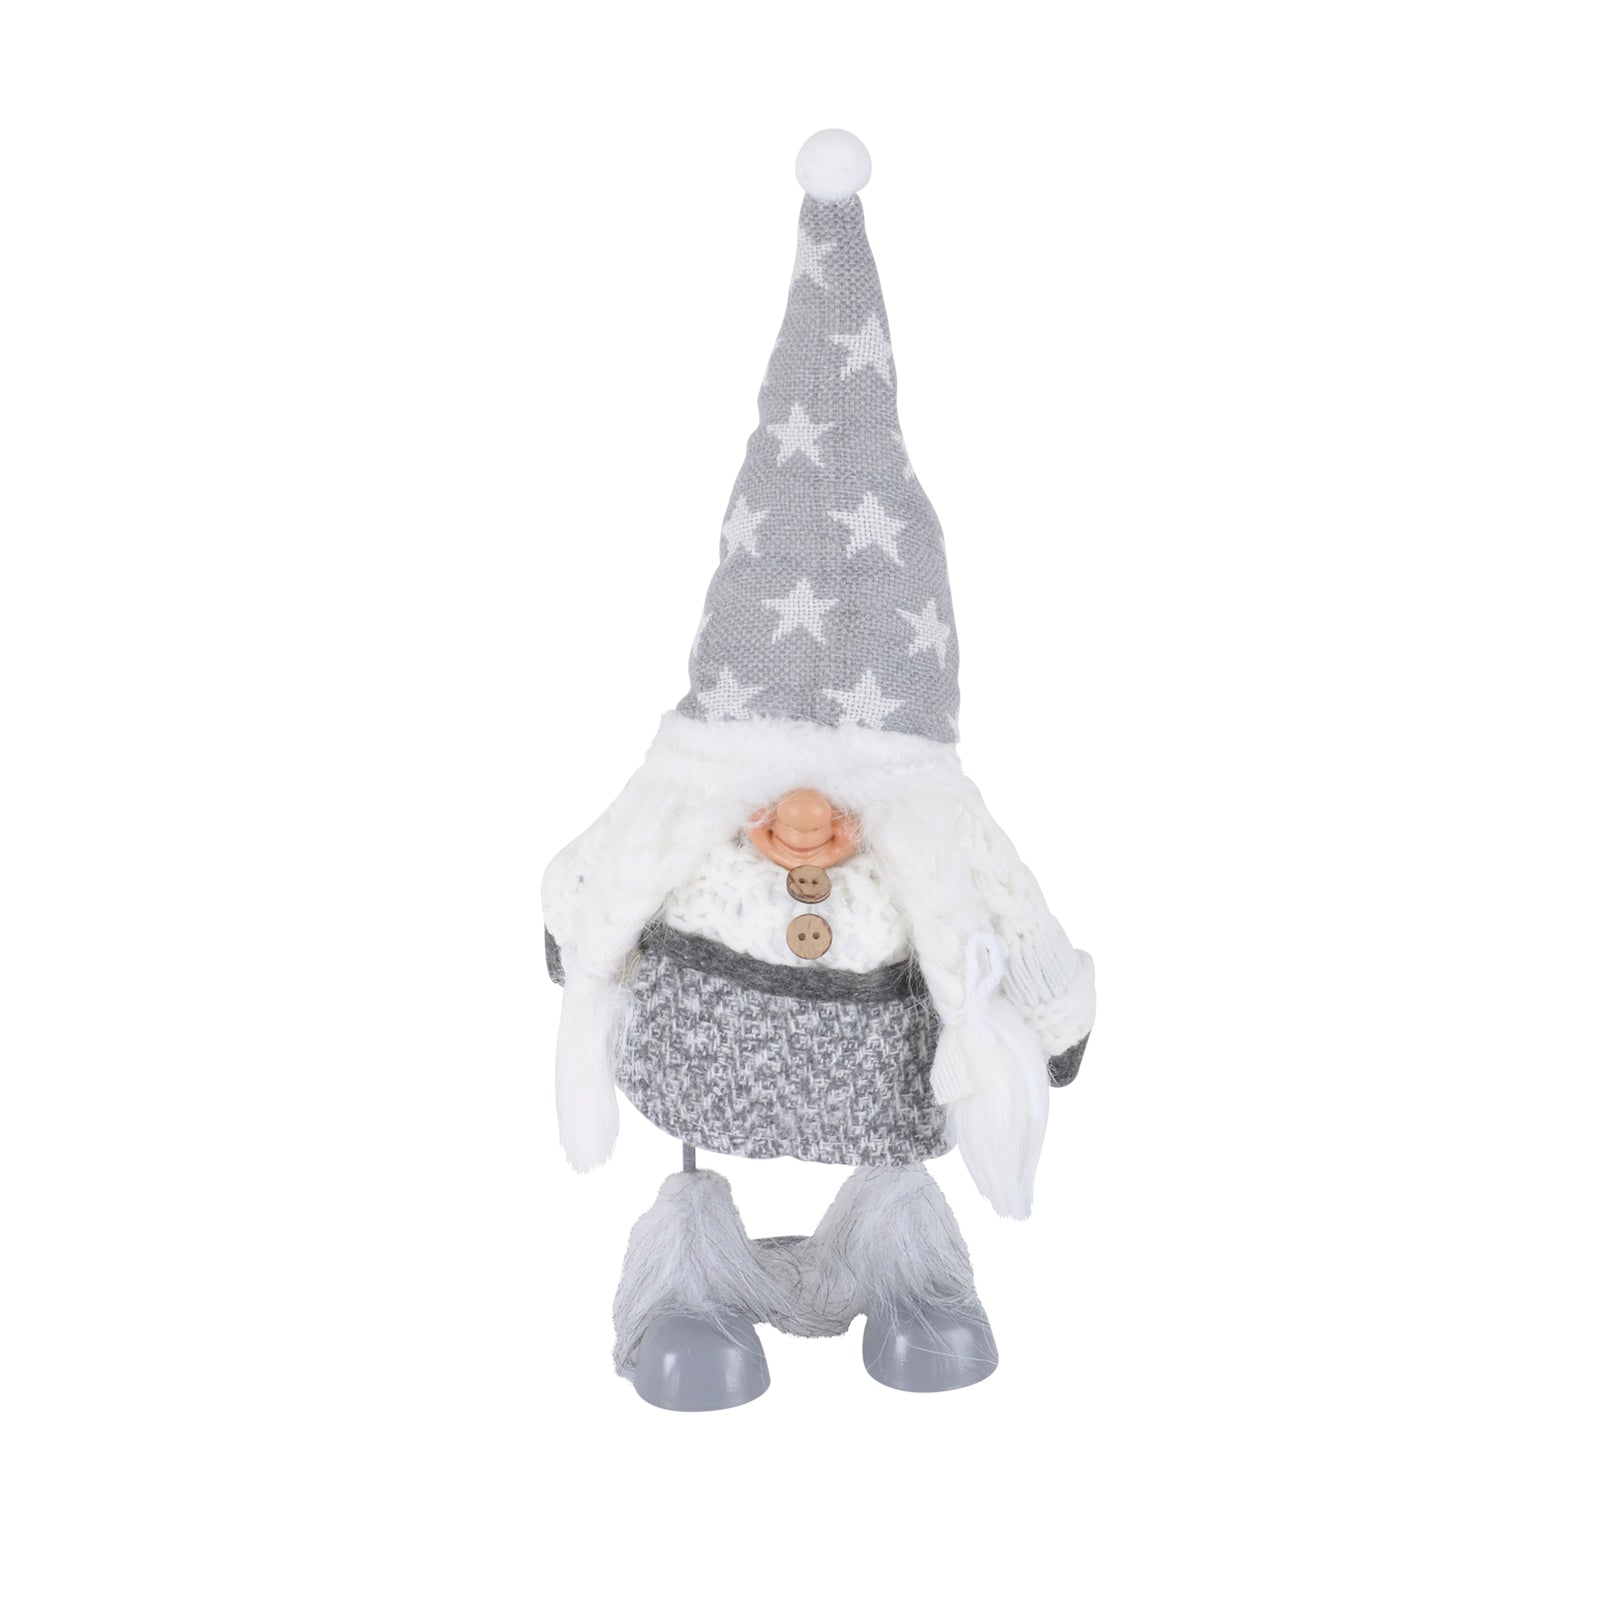 Mr Crimbo Dancing Christmas Gonk Figure Novelty Decoration - MrCrimbo.co.uk -XS4387 - 22cm -christmas decor